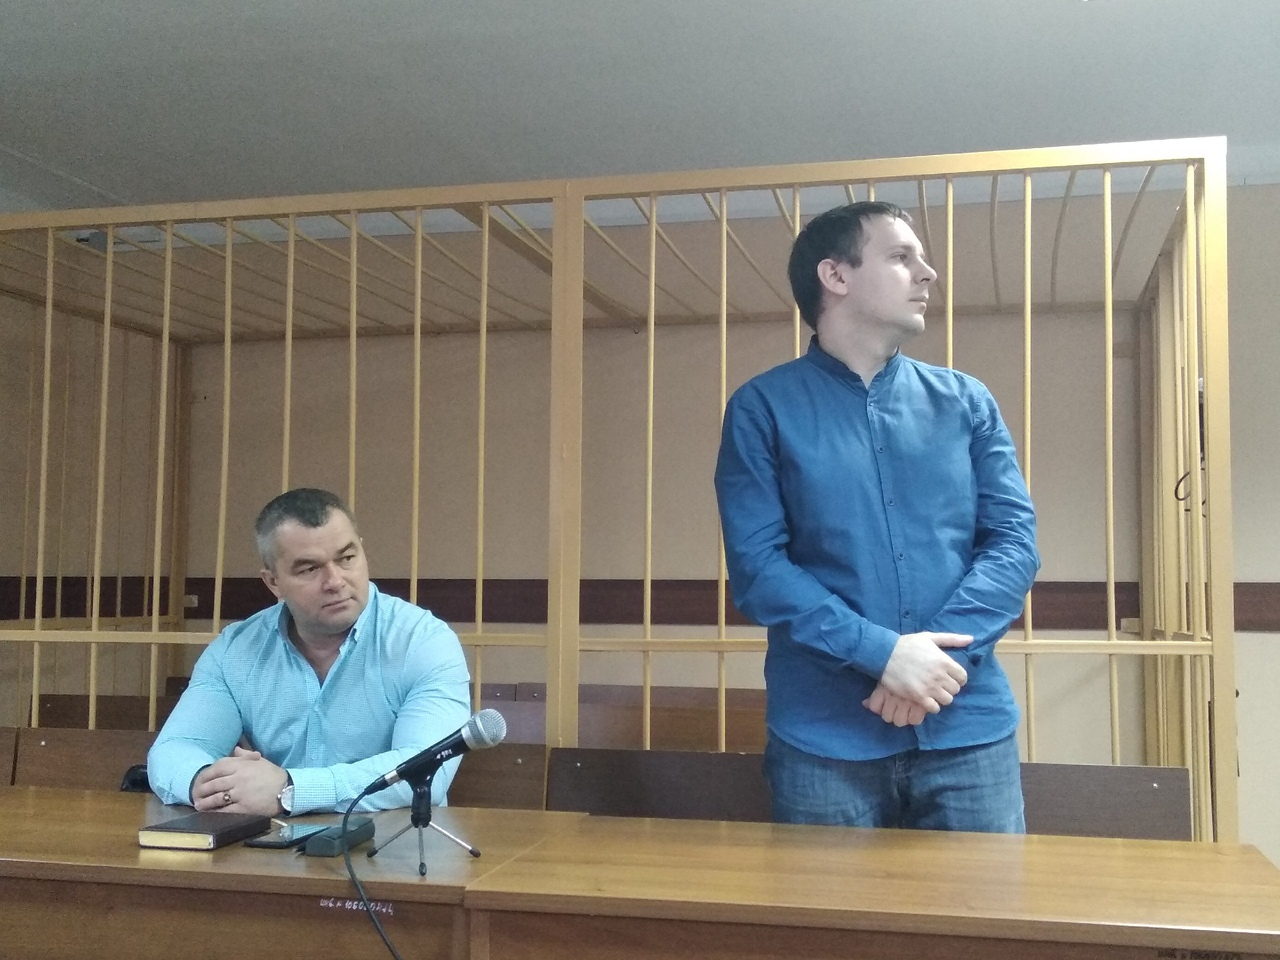 Признал вину: камеры избежал фигурант дела о пытках в ярославской колонии